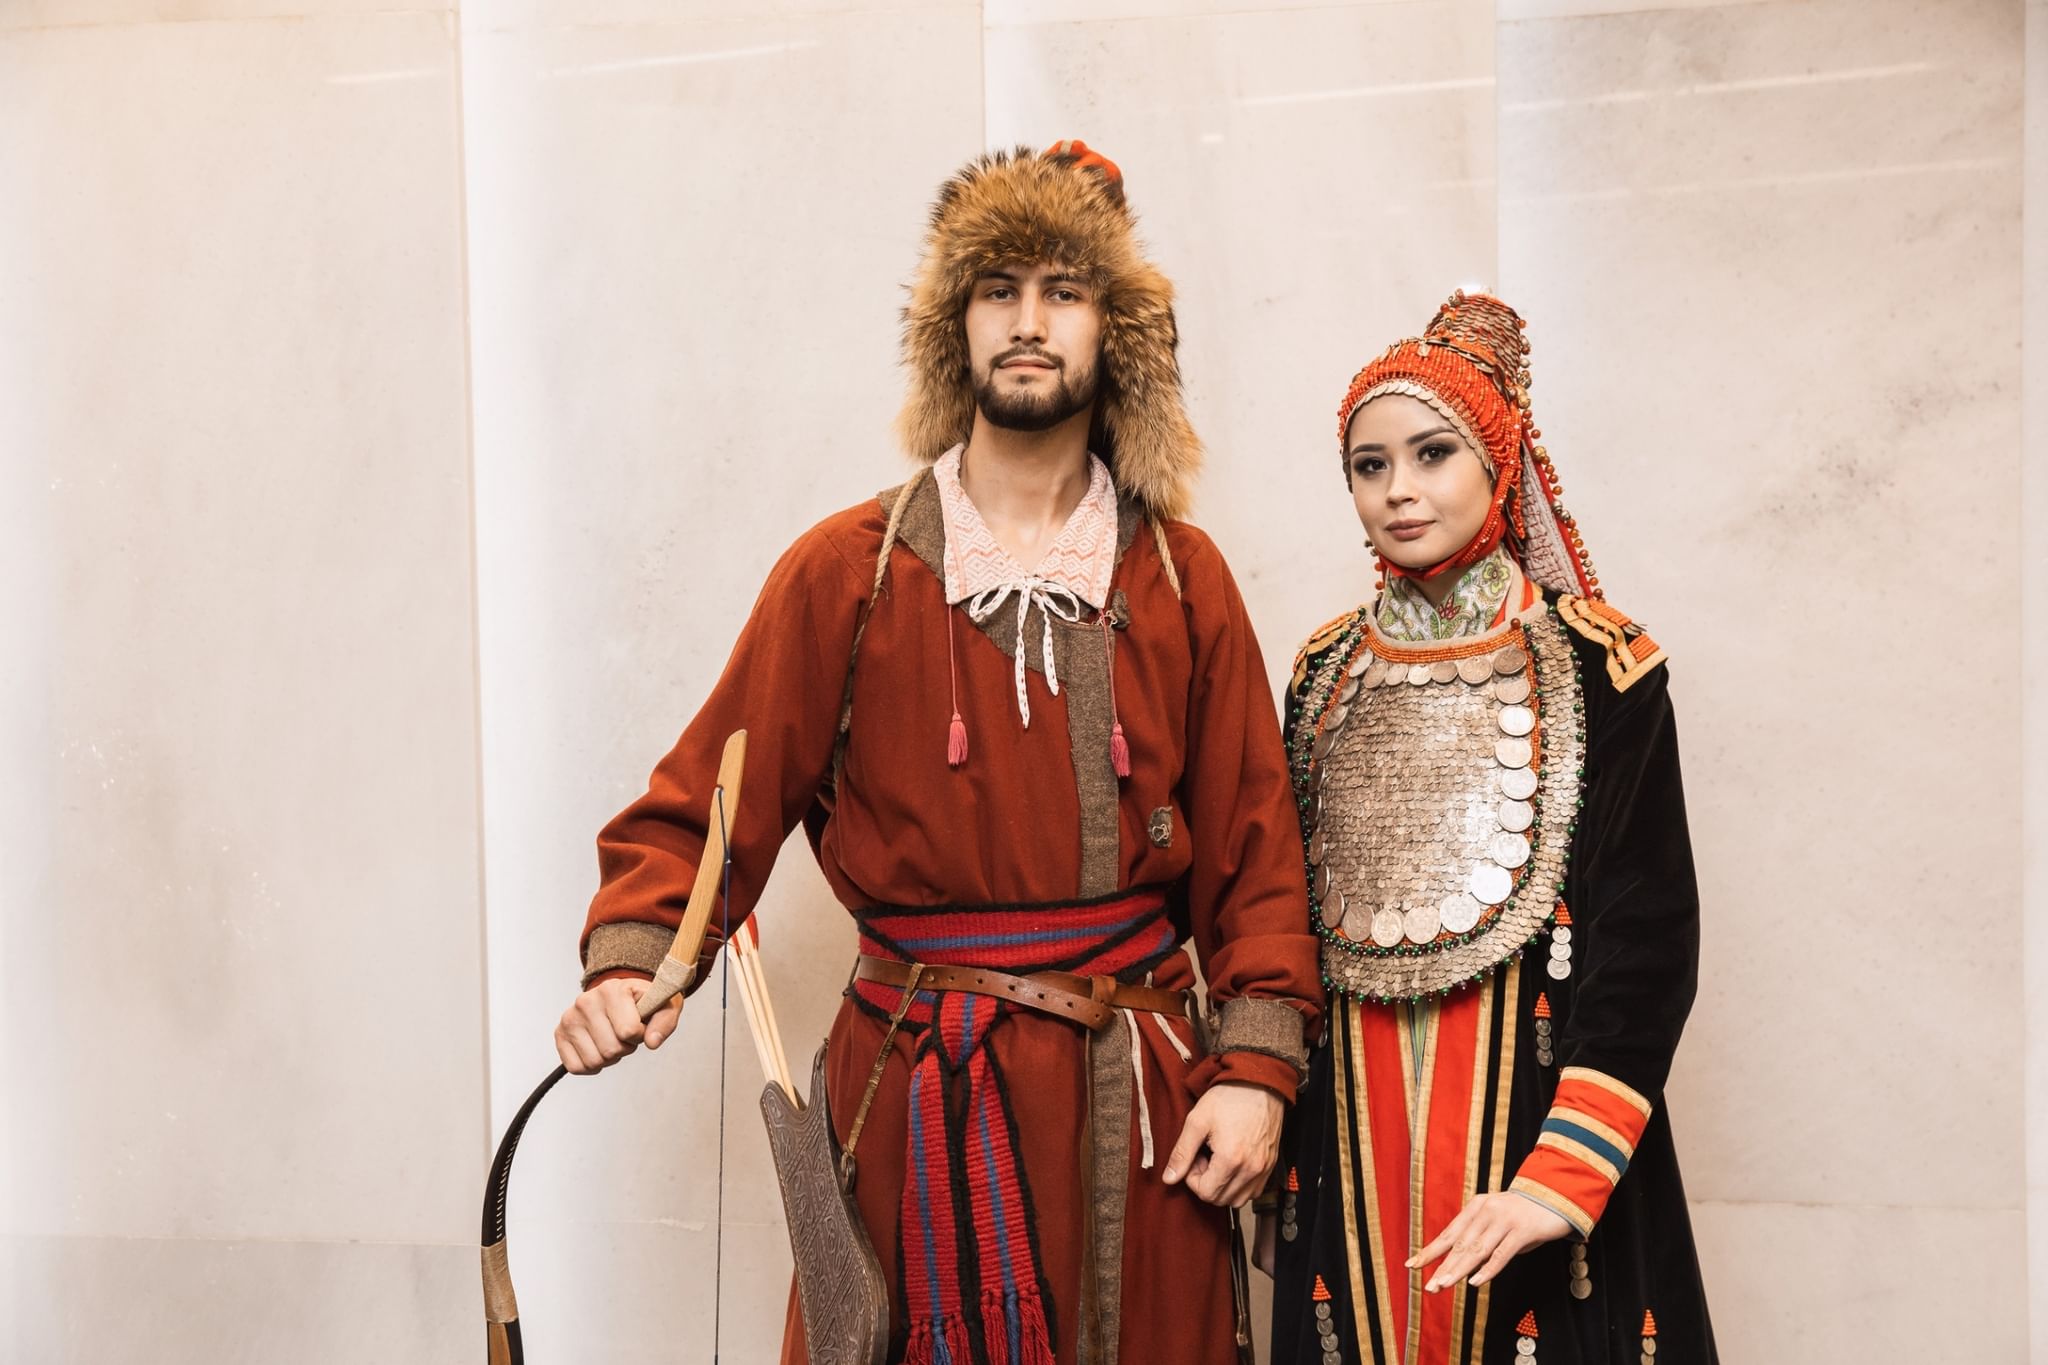 Башкирские национальные костюмы